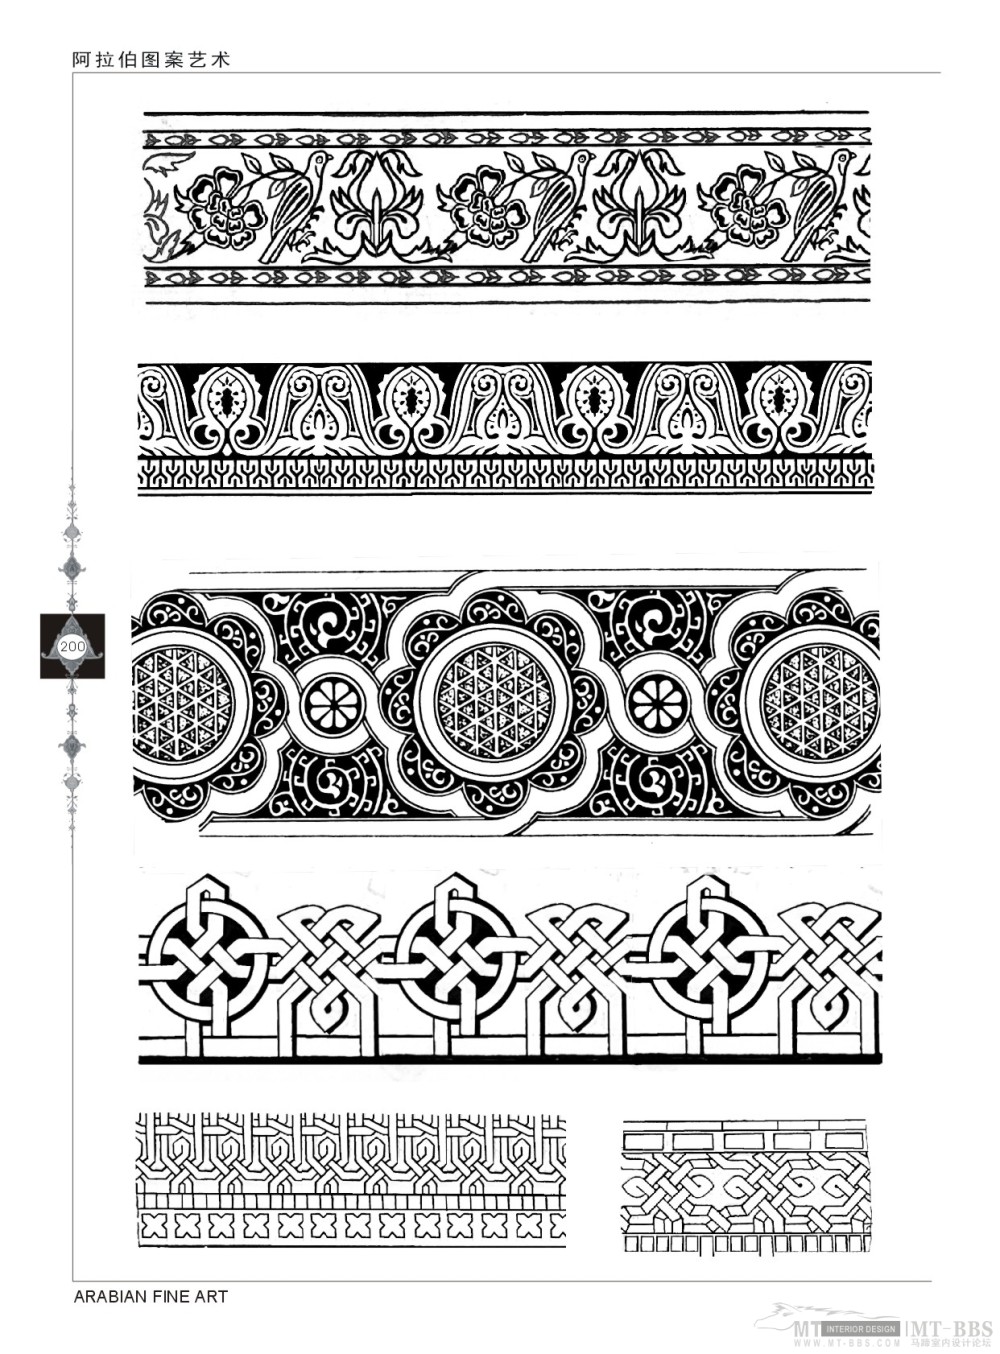 阿拉伯图案艺术_《阿拉伯图案艺术》7--200页-单色图案.jpg